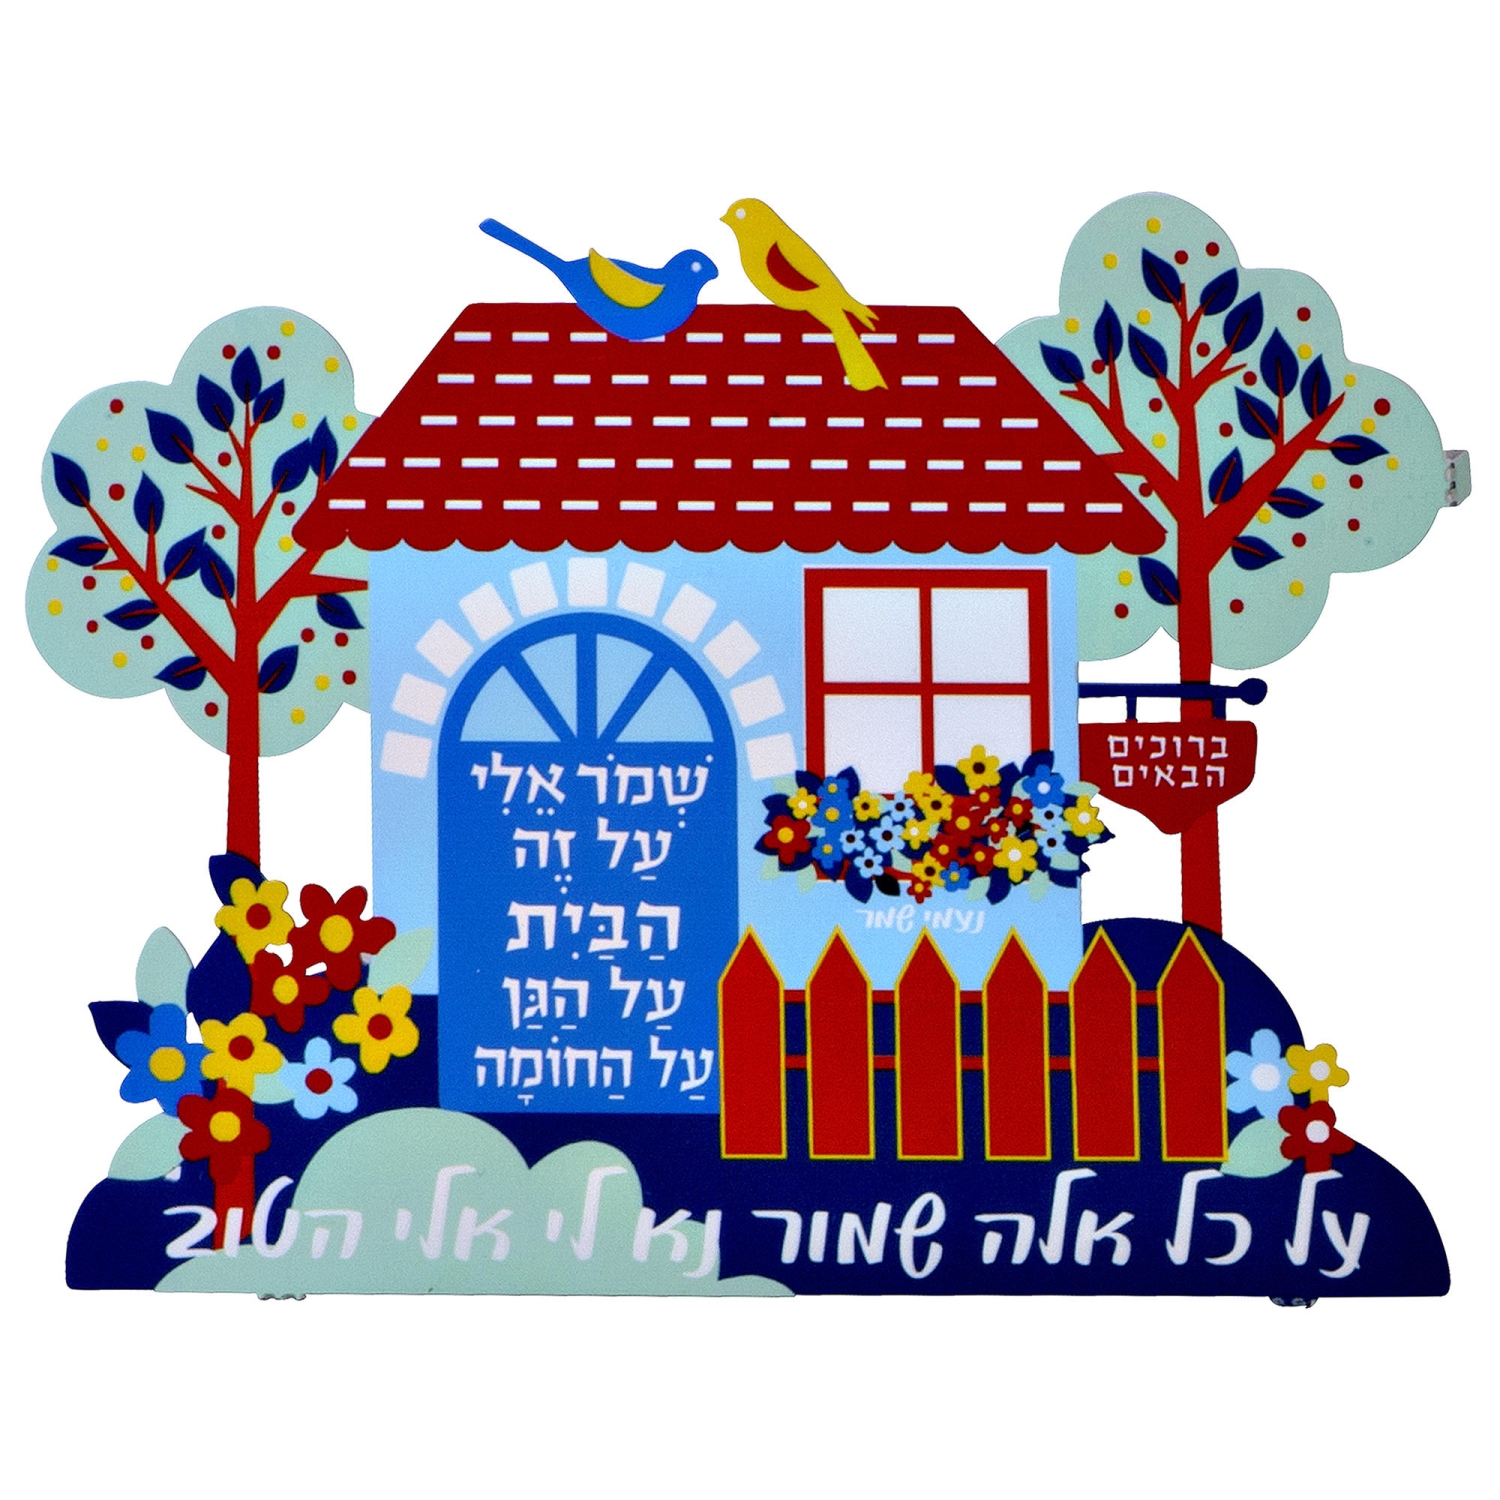 Dorit Judaica Home and Garden Wall Hanging with Naomi Shemer Lyrics - 1